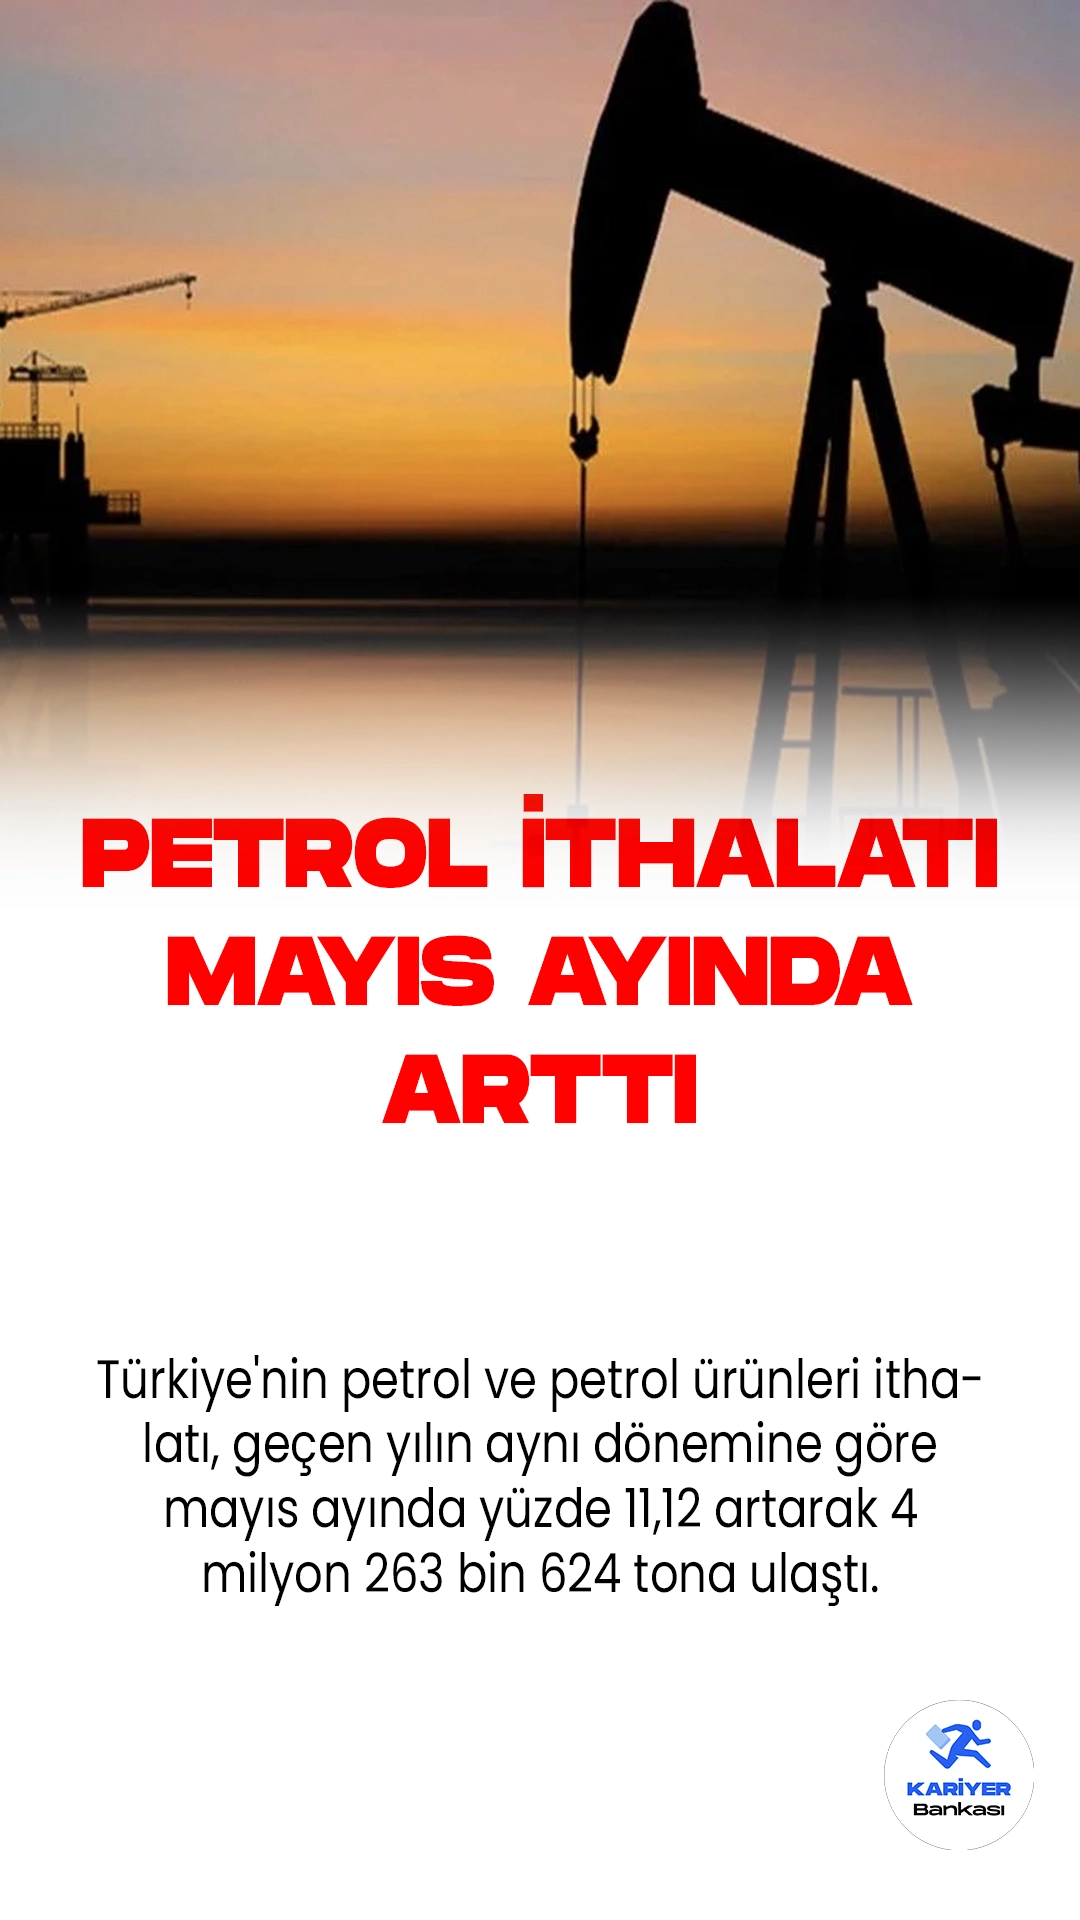 Türkiye'nin Petrol ve Petrol Ürünleri İthalatı Mayıs Ayında Yükseldi.Türkiye'nin petrol ve petrol ürünleri ithalatı, geçen yılın aynı dönemine göre mayıs ayında yüzde 11,12 artarak 4 milyon 263 bin 624 tona ulaştı. Enerji Piyasası Düzenleme Kurumu'nun yayınladığı "Petrol Piyasası Sektör Raporu"na göre, en fazla ithalatı gerçekleştiren ülkeler sırasıyla Rusya, Irak ve Kazakistan oldu.